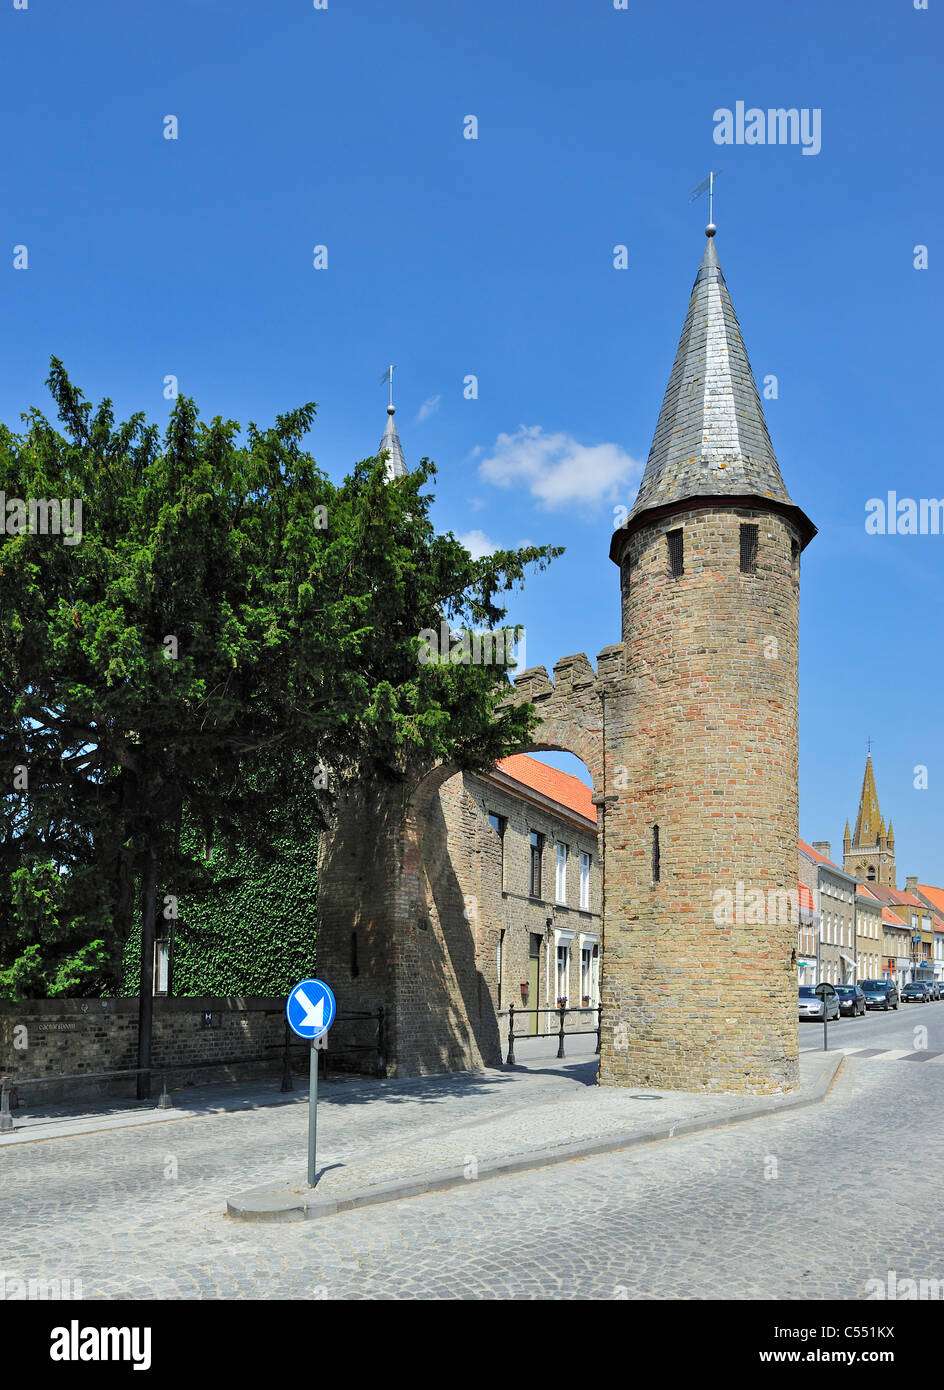 Arbre généalogique de César, un vieux taxus arbre près de l'entrée ouest à Lo-Reninge, Belgique Banque D'Images